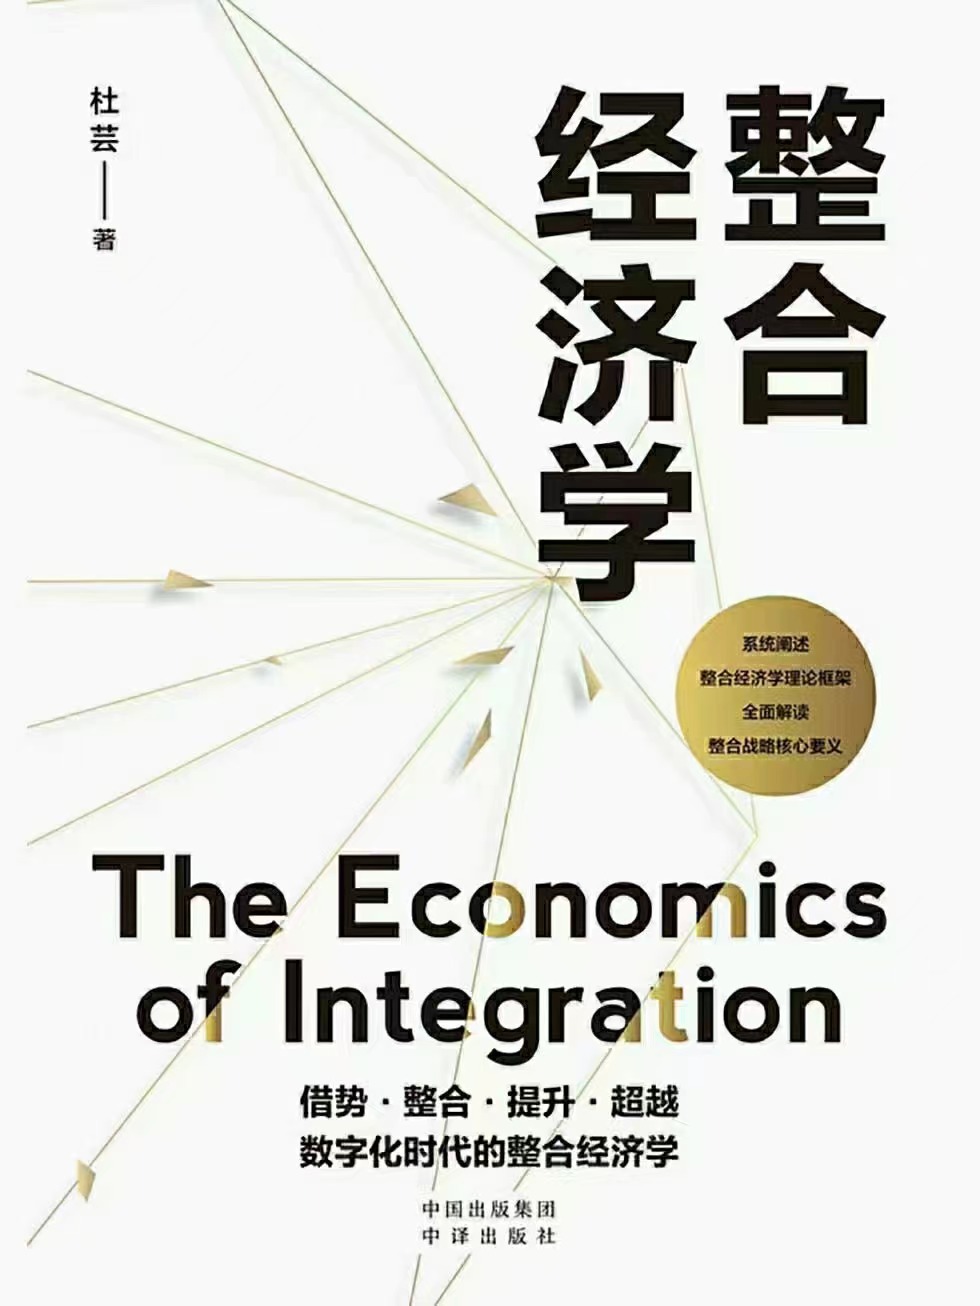 【电子书上新】 ★《整合经济学》 ​~全面解读数字时代整合战略的核心要义